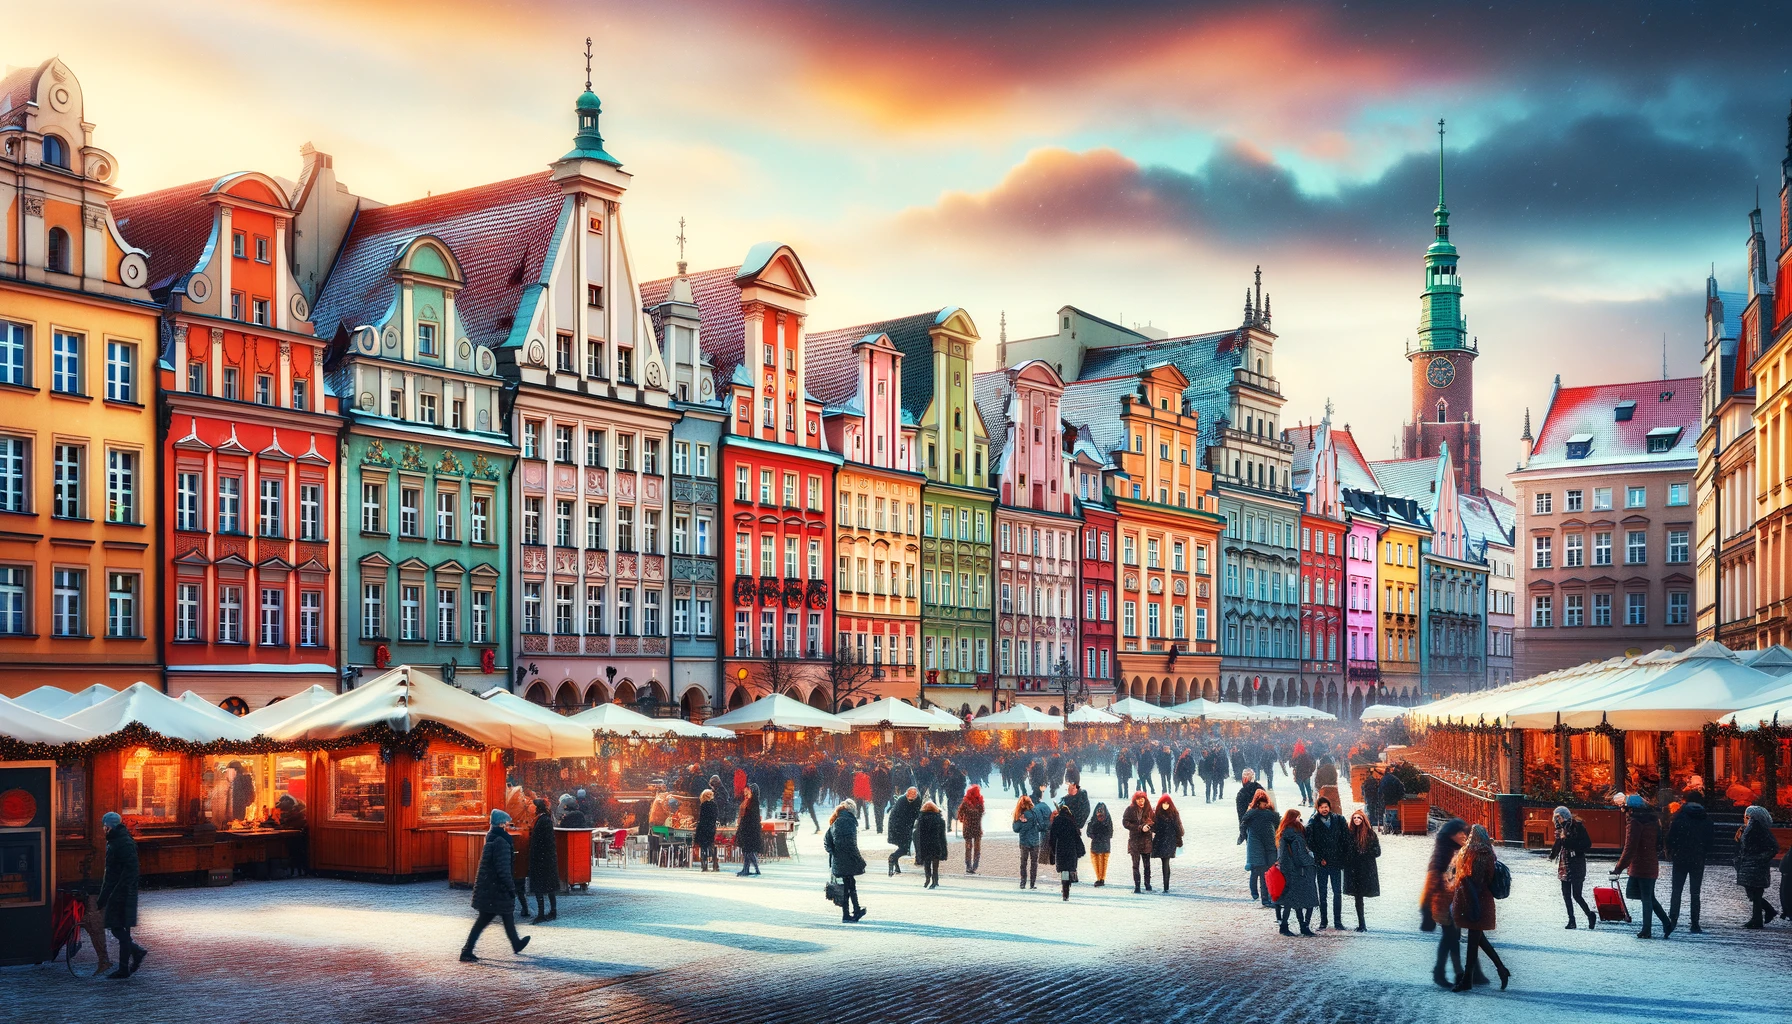 Żywy widok Rynku we Wrocławiu w lutym, z kolorowymi fasadami historycznych budynków i tłumem ludzi cieszących się zimowymi aktywnościami.